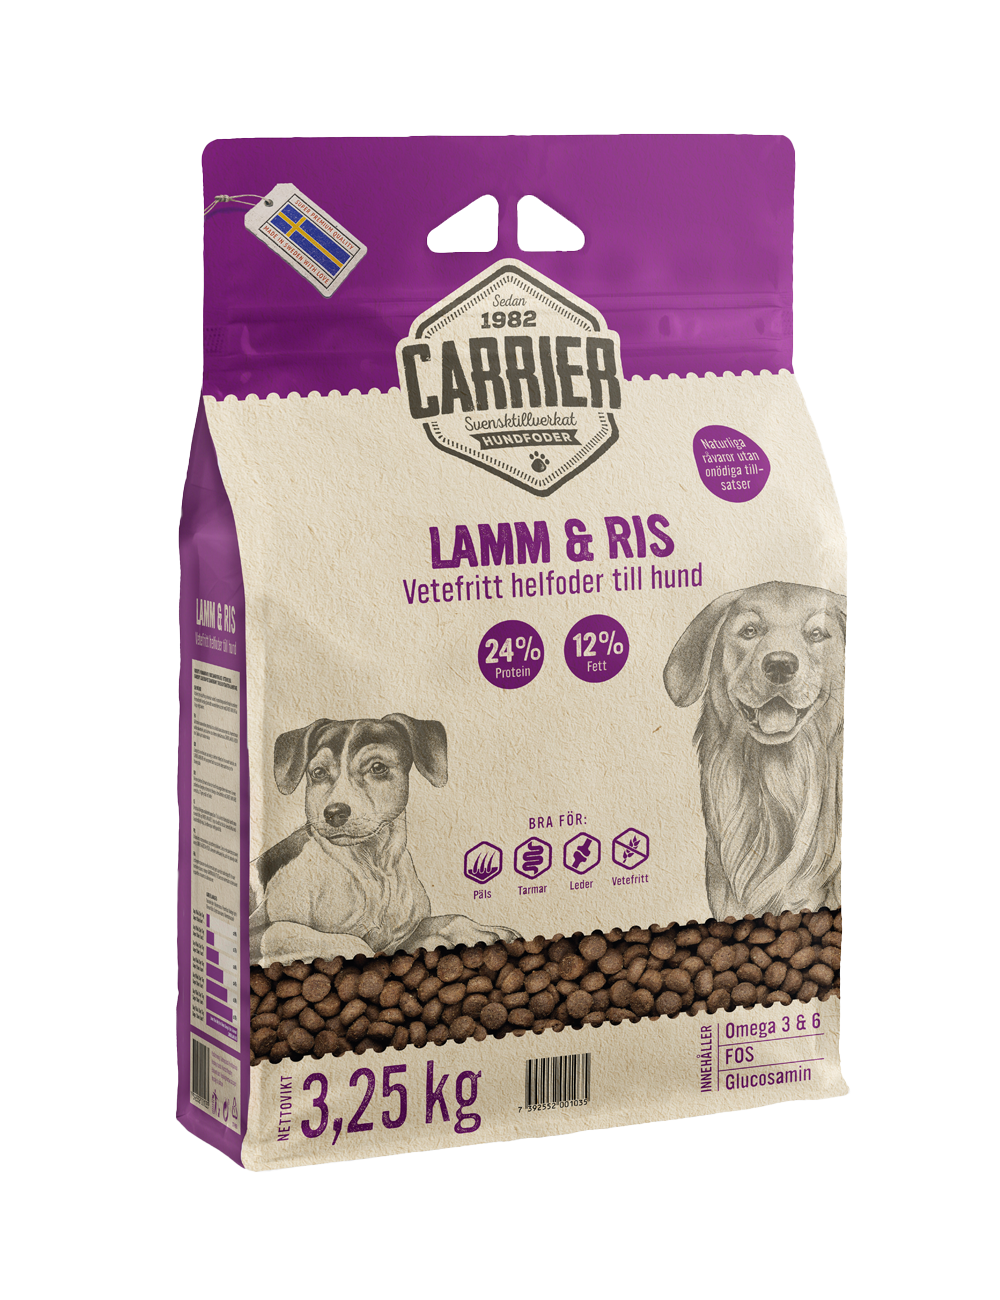 Carrier Lamm & Ris Hundfoder